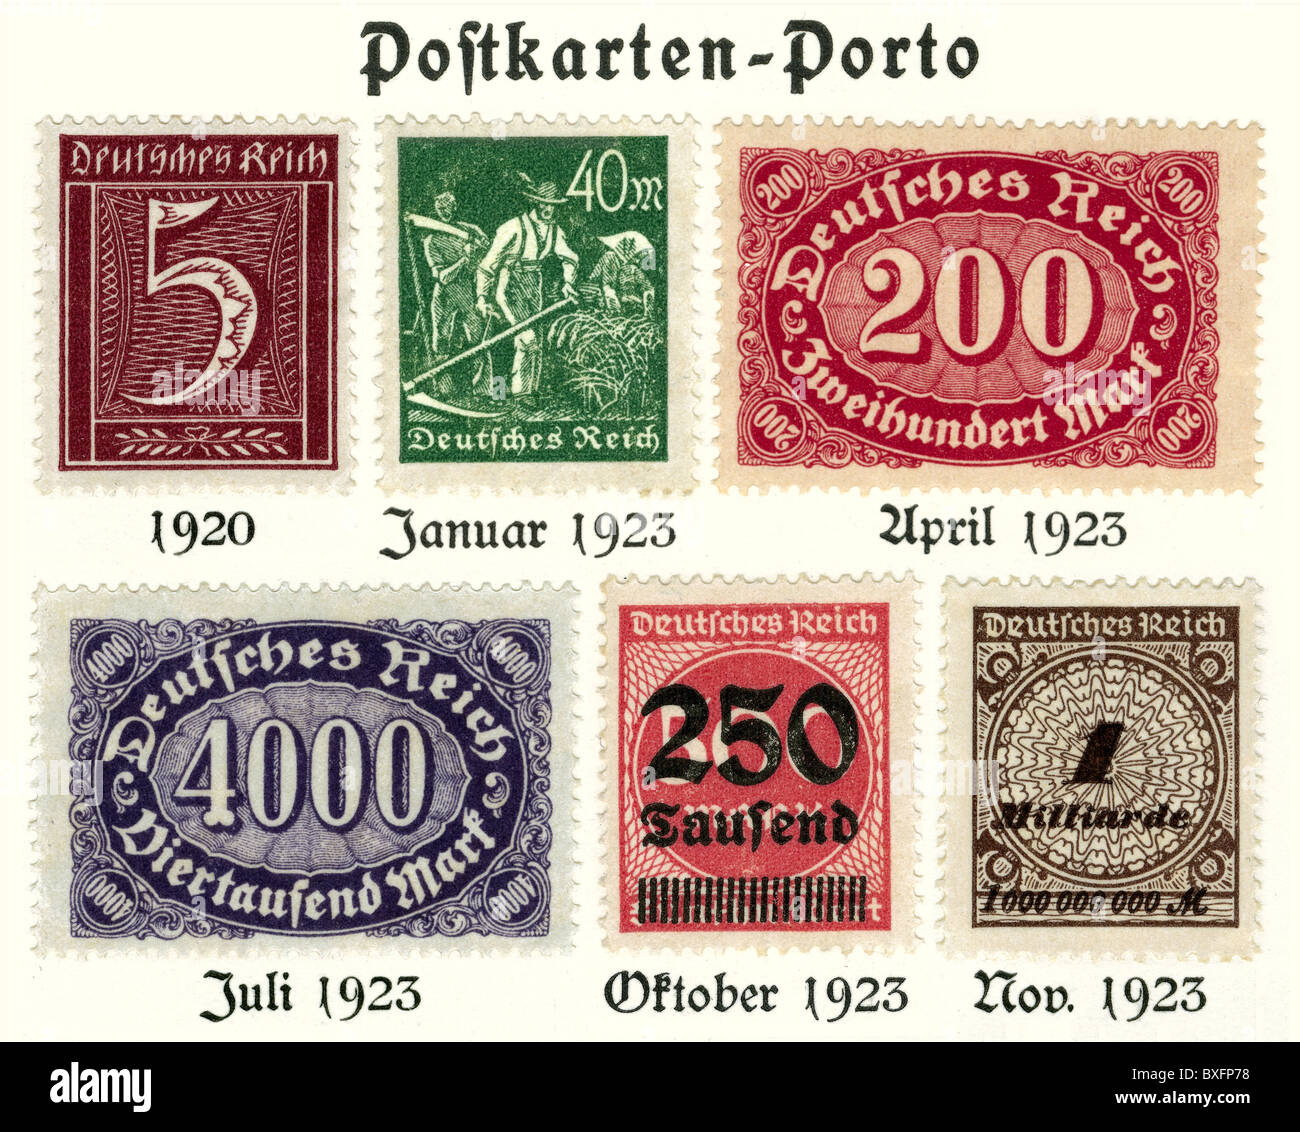 Poste, timbres, Postkarten-Porto, Allemagne, 1920 - 1923, droits-supplémentaires-Clearences-non disponible Banque D'Images